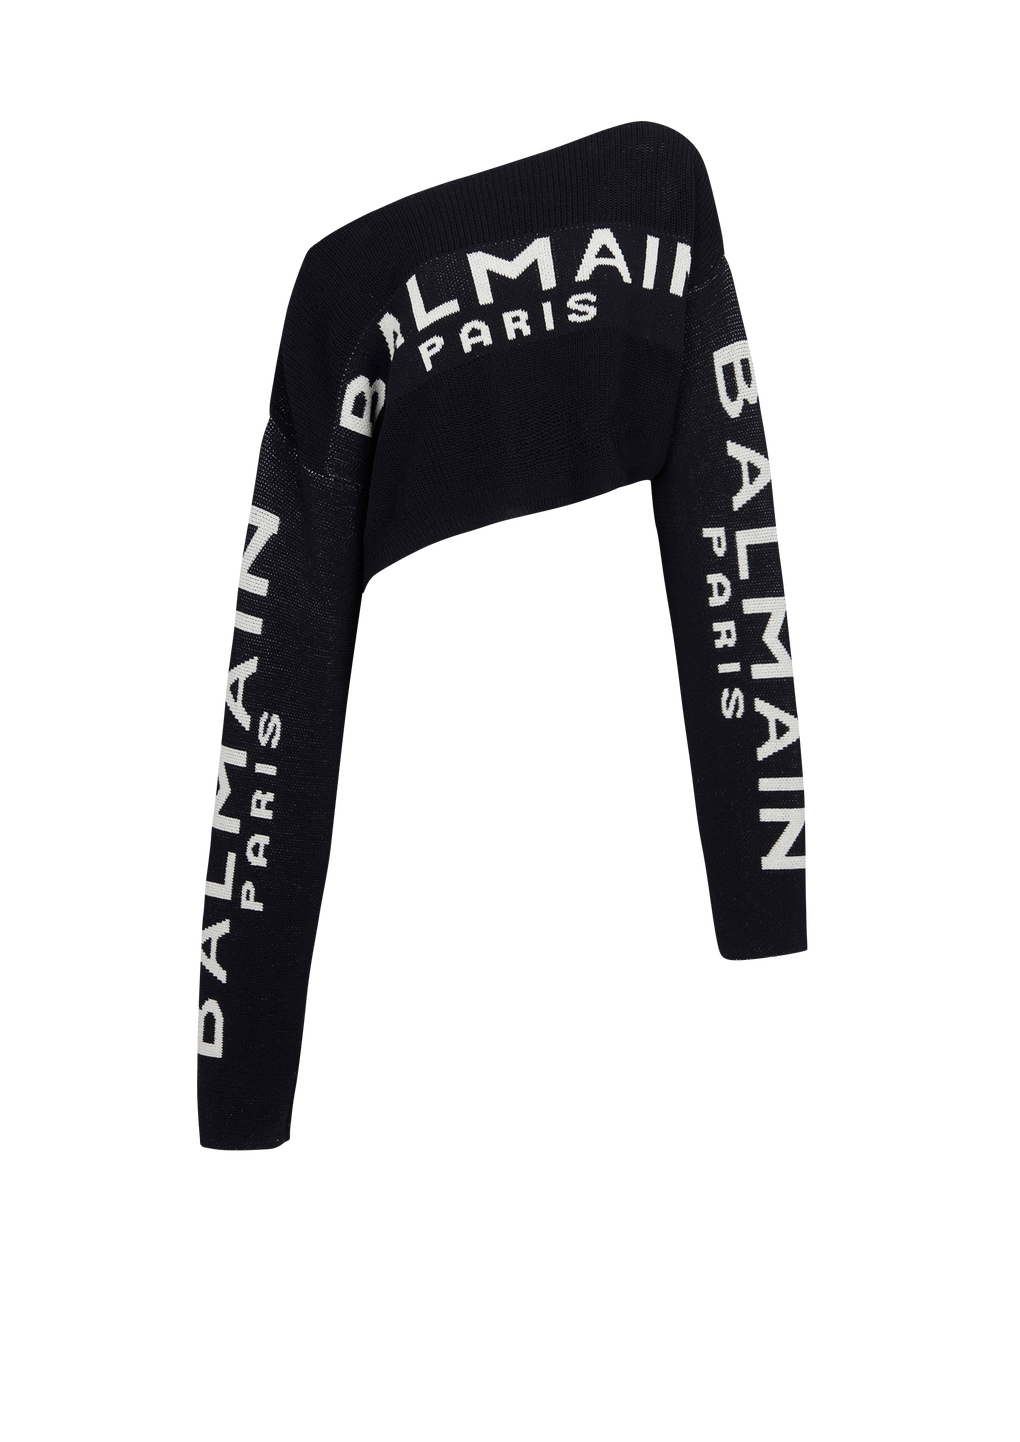 Pullover corto in maglia con logo Balmain graffiti, nero, hi-res